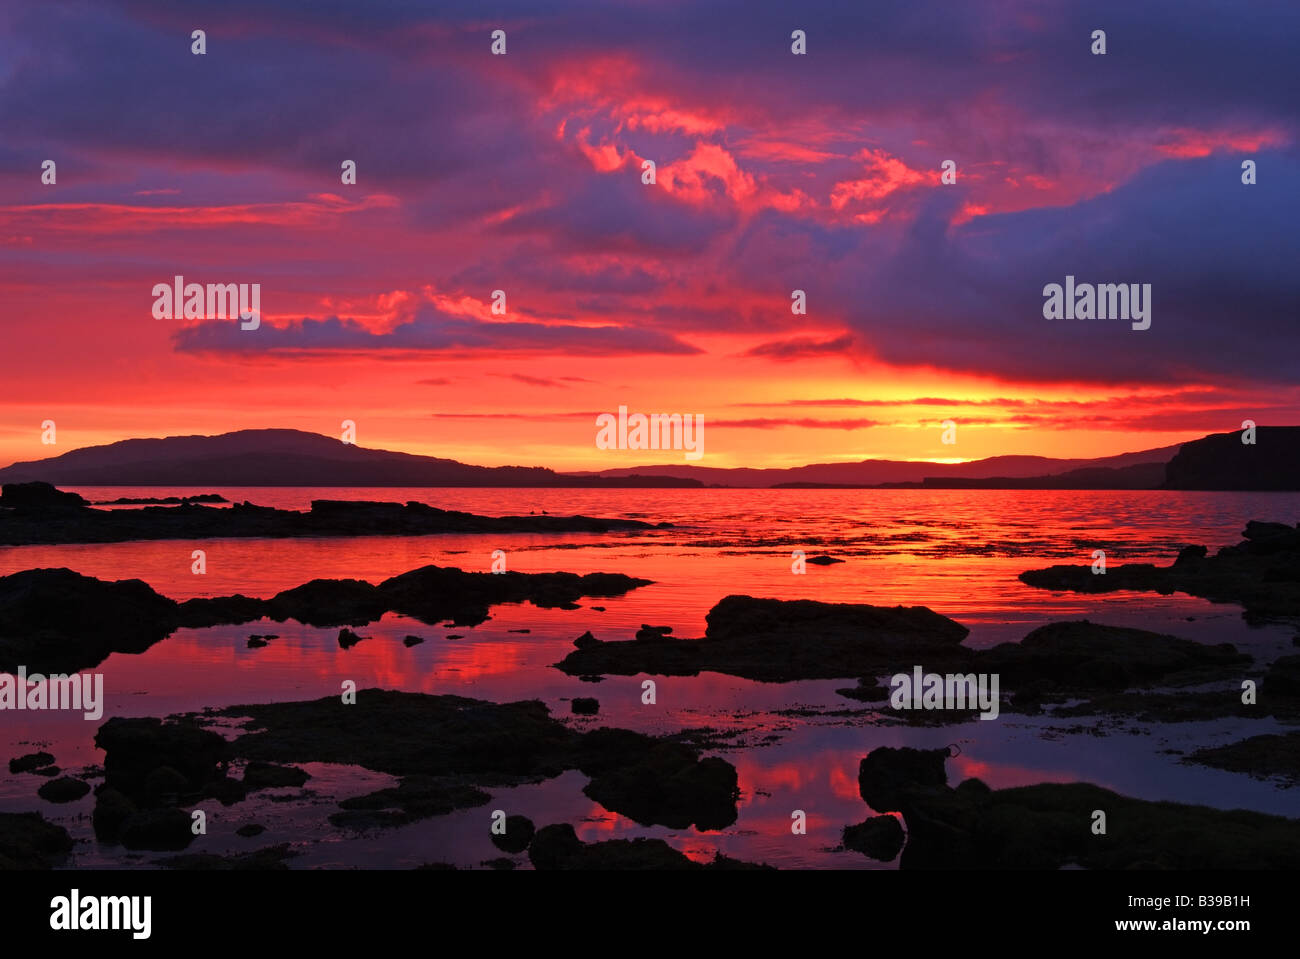 Regno Unito Scozia Isle of Mull argyll loch na keal e ulva Foto Stock